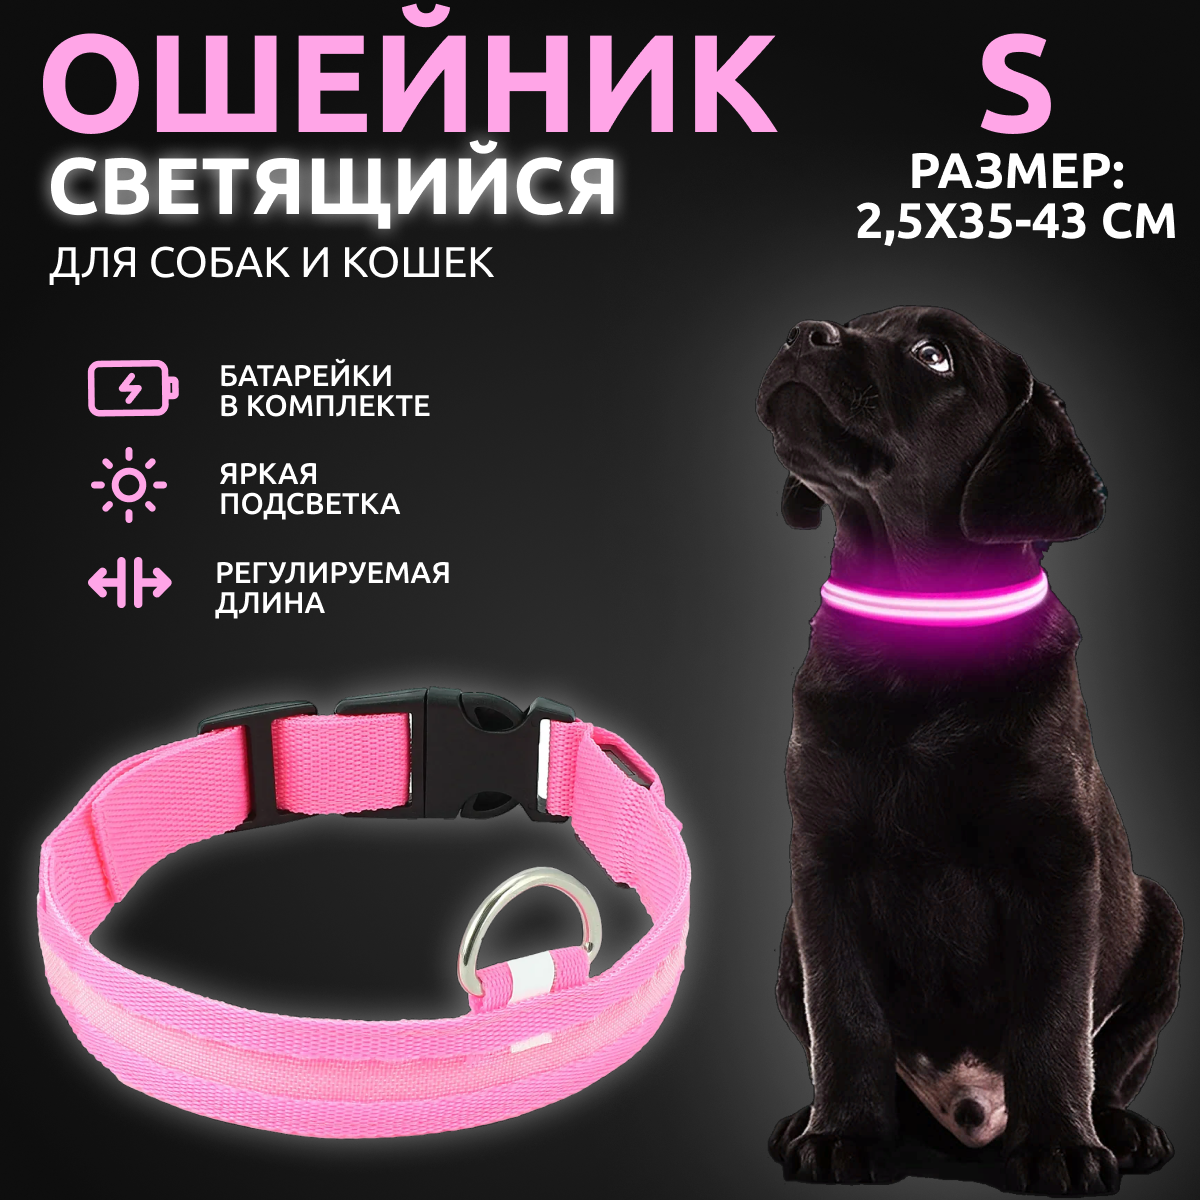 Ошейник светящийся для собак AT AT светодиодный розового, S - 2,5х35-43 см